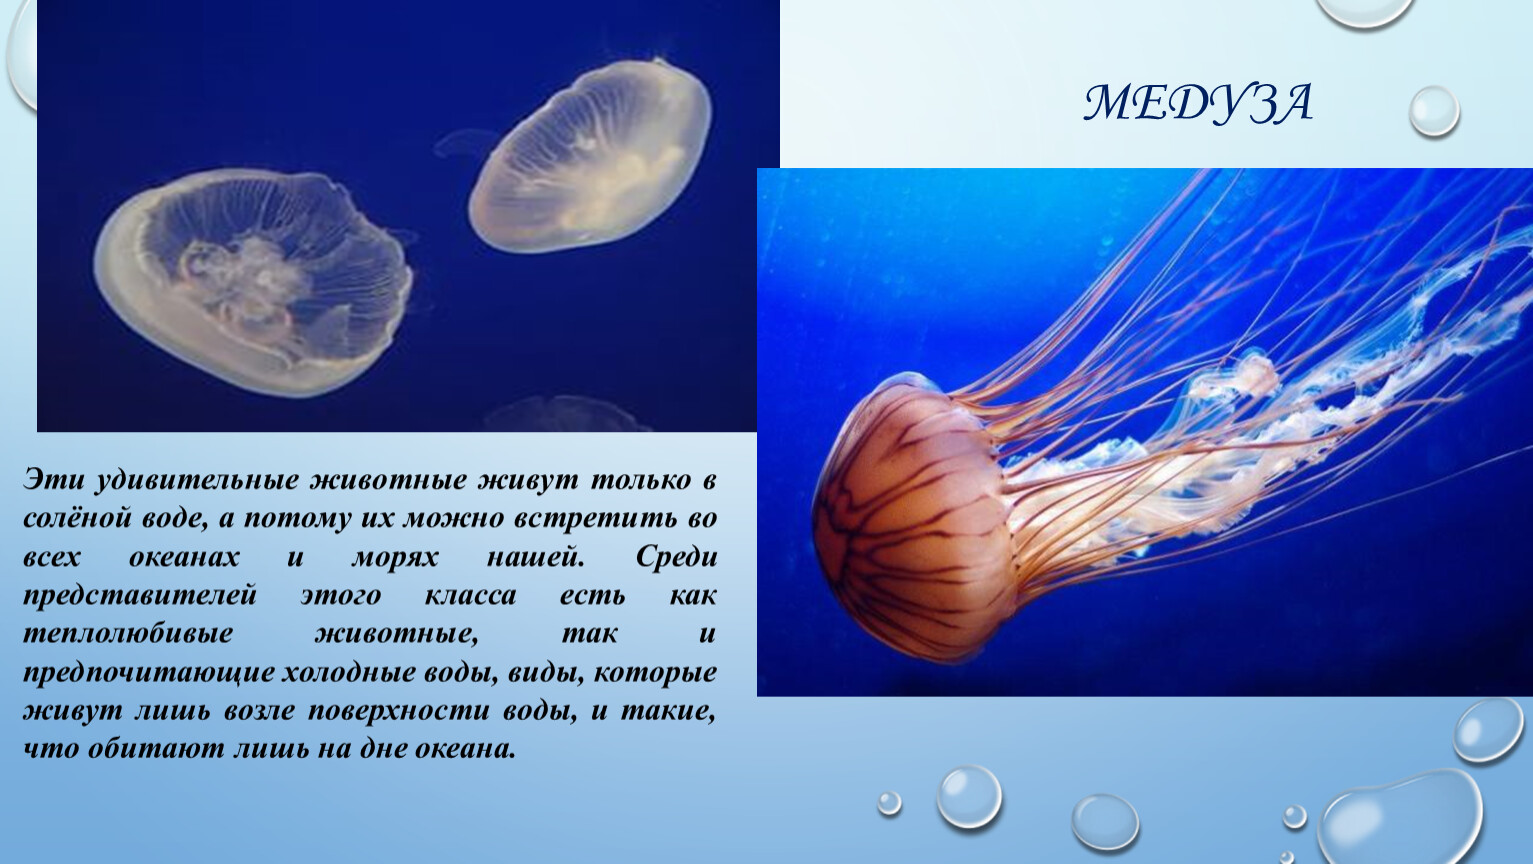 Сообщение удивительные обитатели мирового океана. Медузы презентация. Медуз который обитает в море. Медузы обитают только в соленой воде. Обитатели морей и океанов медуза.